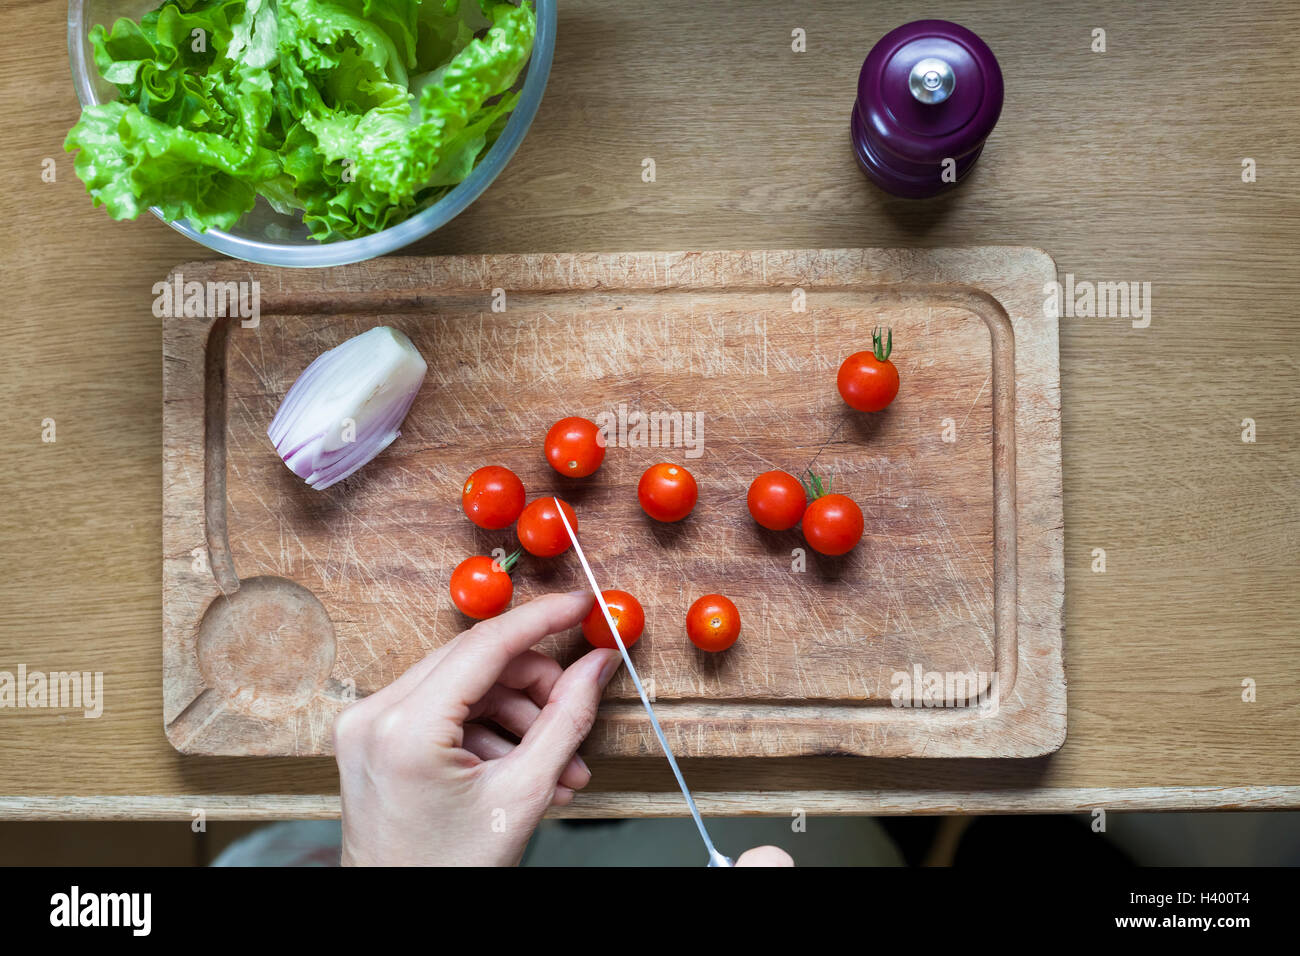 Preparación de ensaladas para dieta saludable en casa con tomates cherry Foto de stock